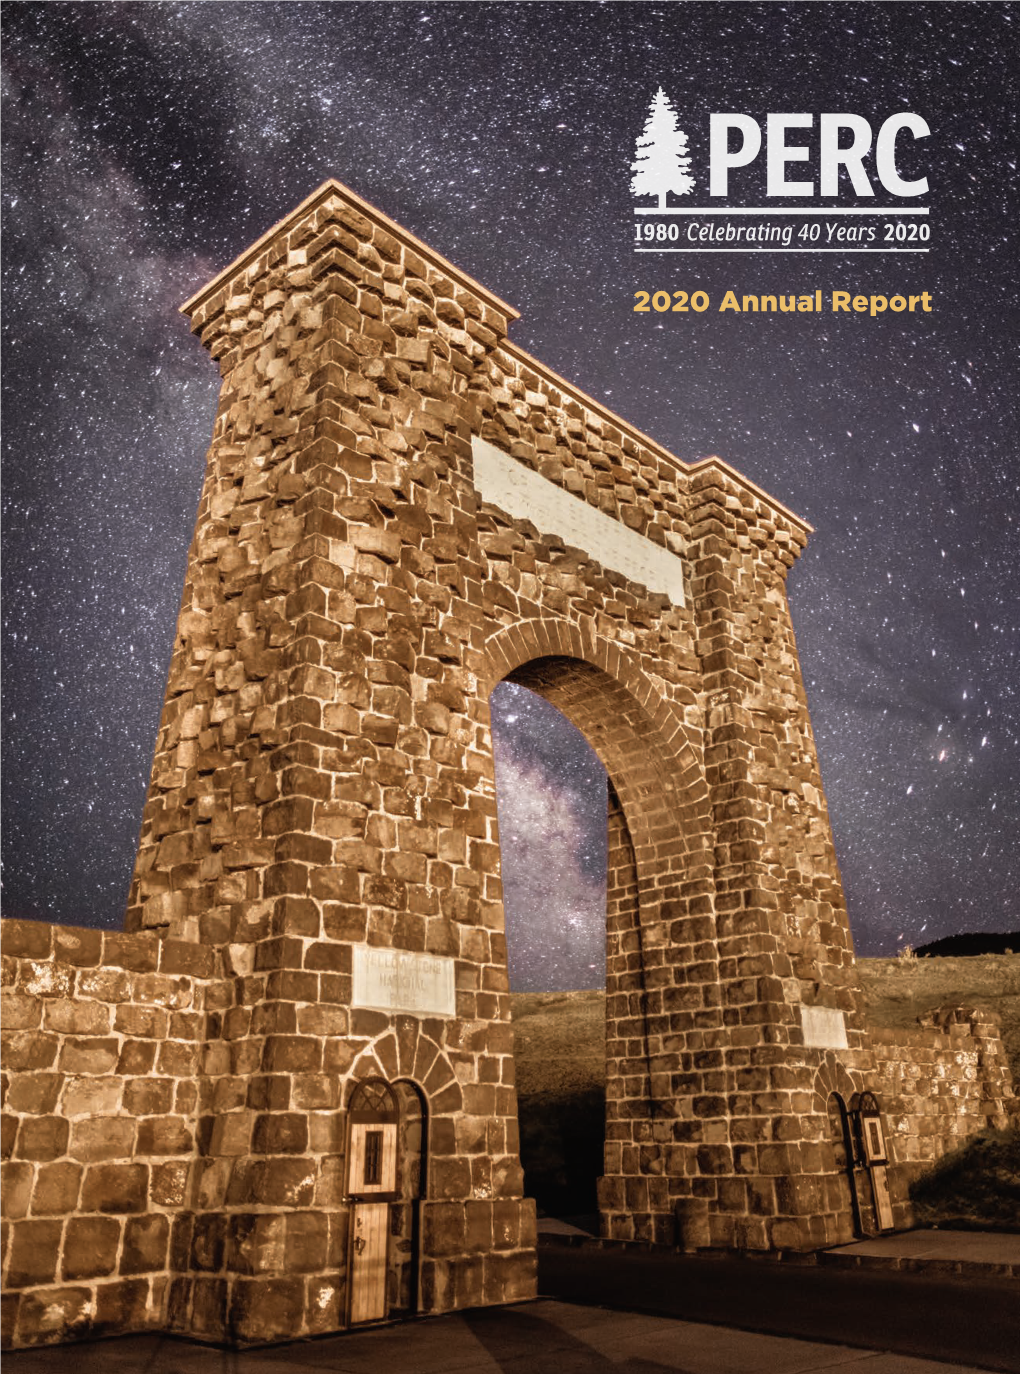 PERC's 2020 Annual Report